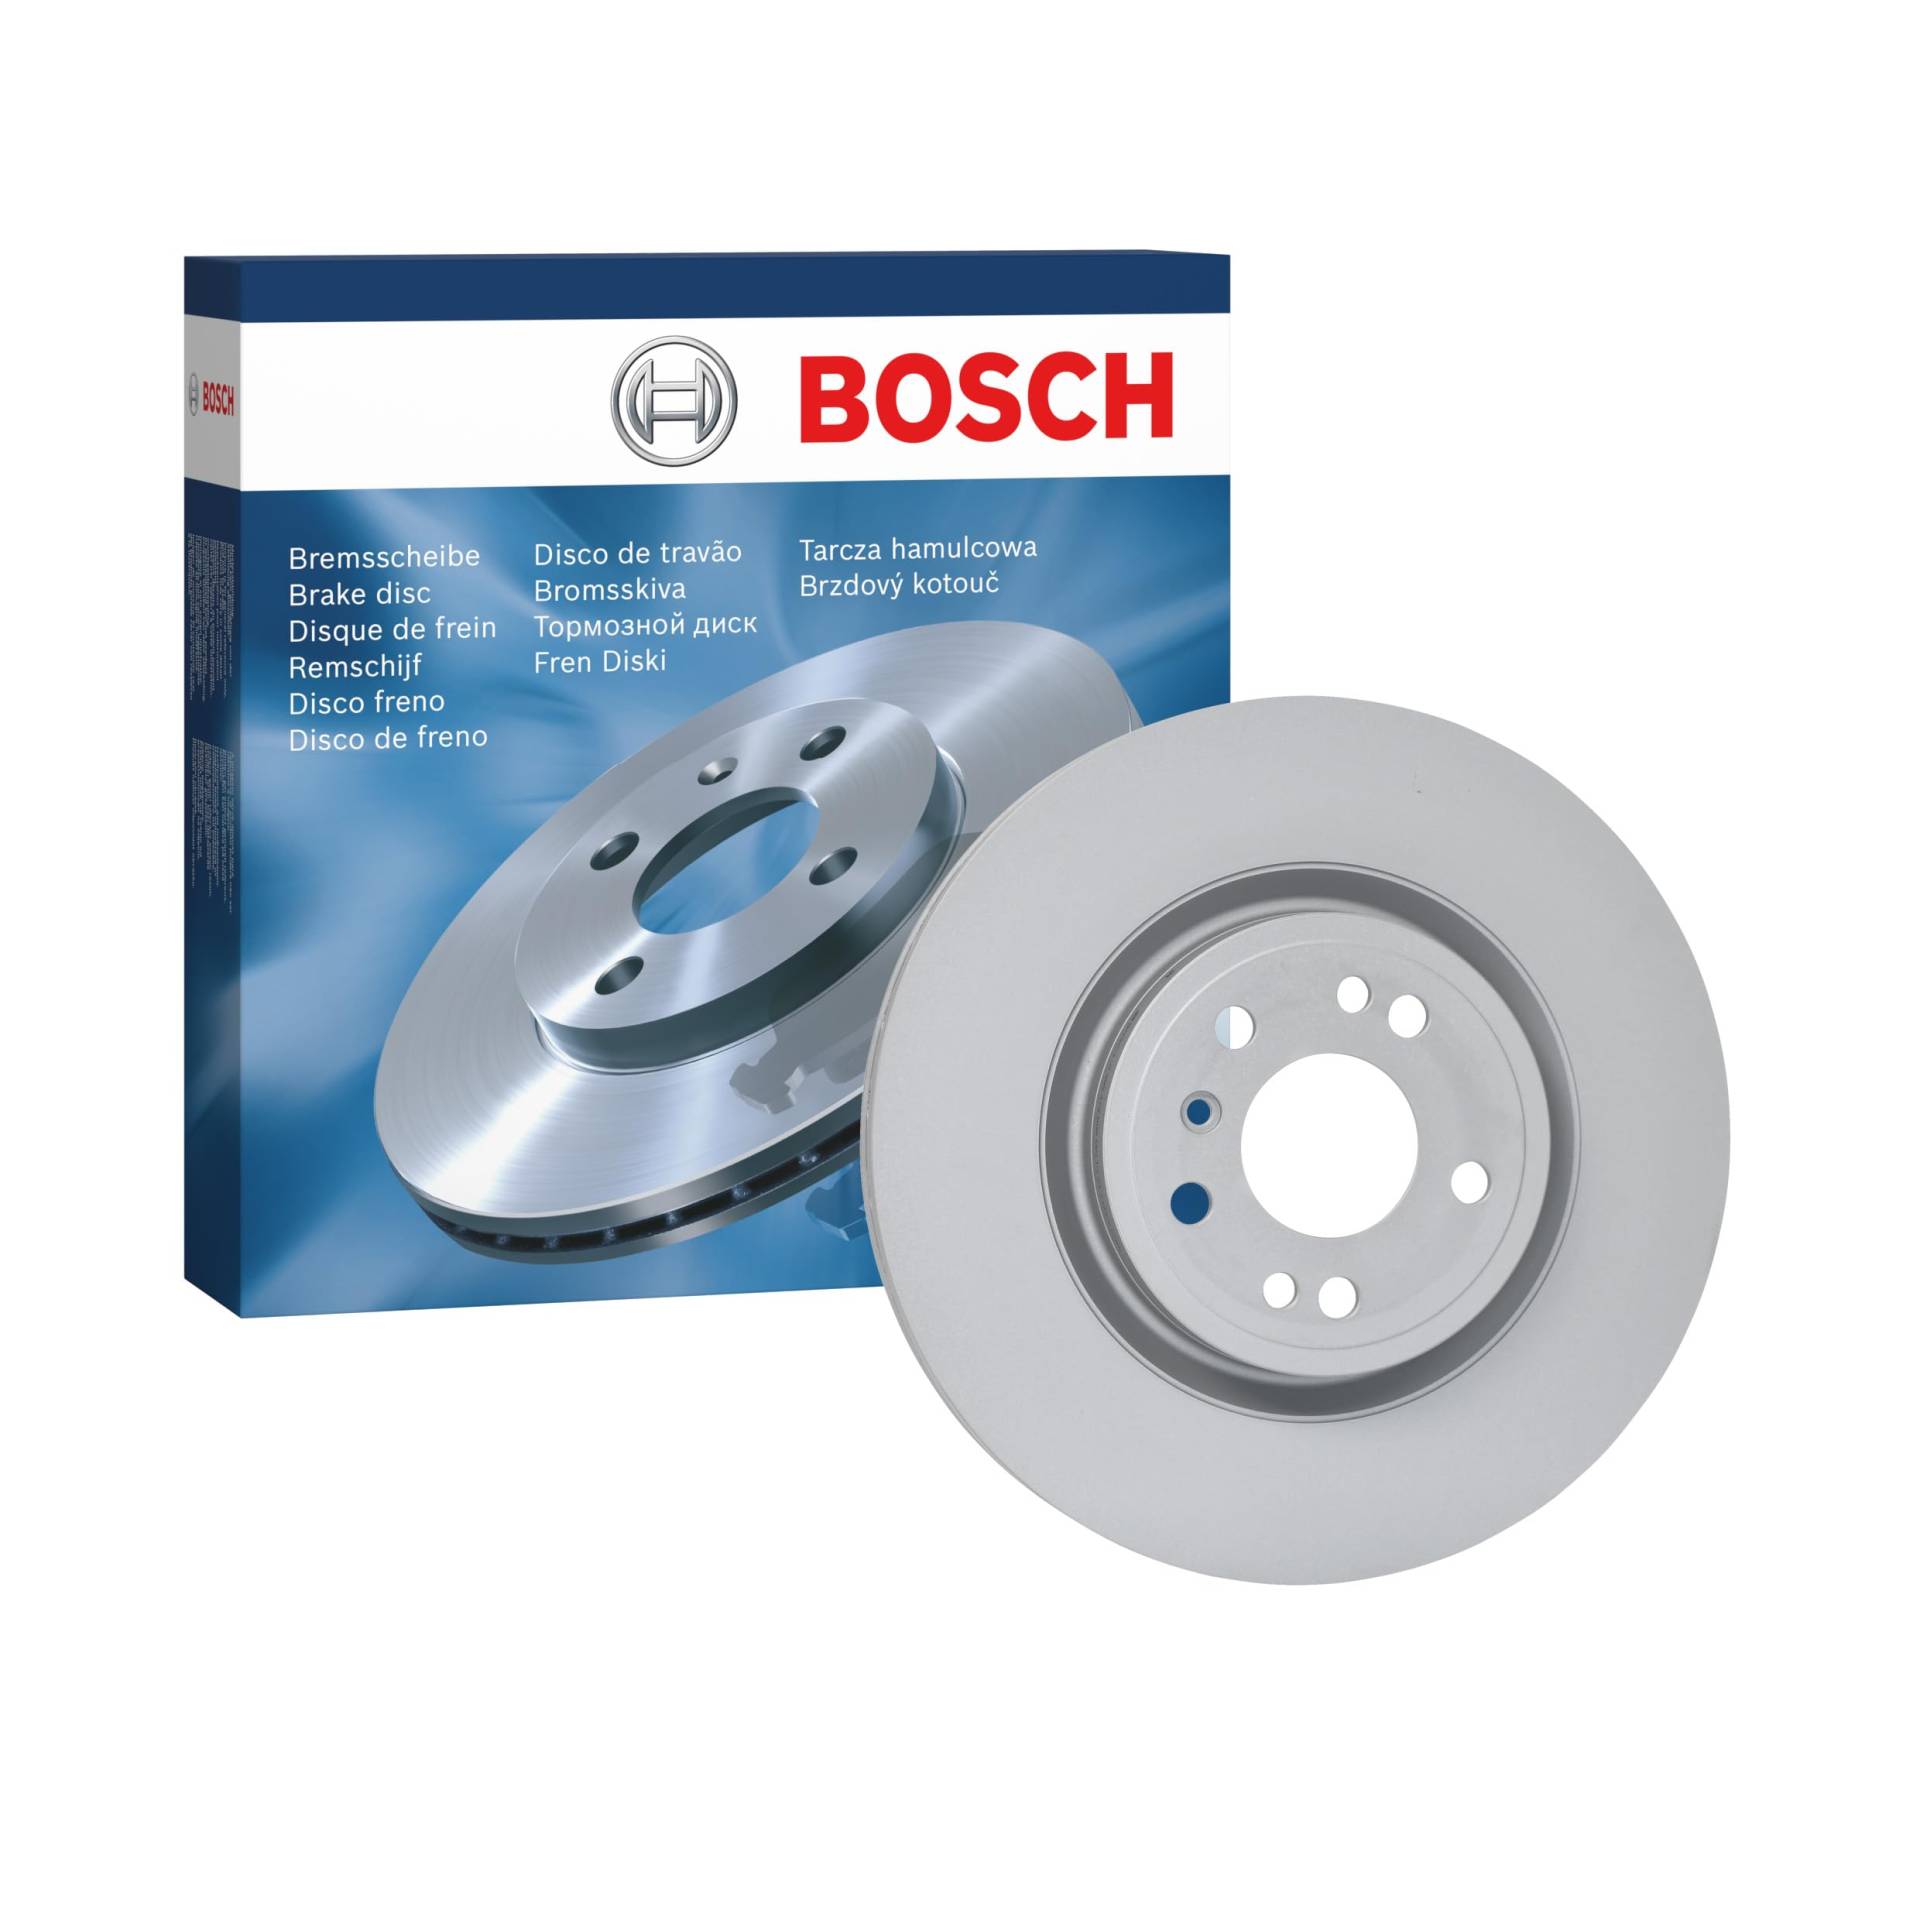 Bosch BD2429 Bremsscheiben - Vorderachse - ECE-R90 Zertifizierung - eine Bremsscheibe von Bosch Automotive